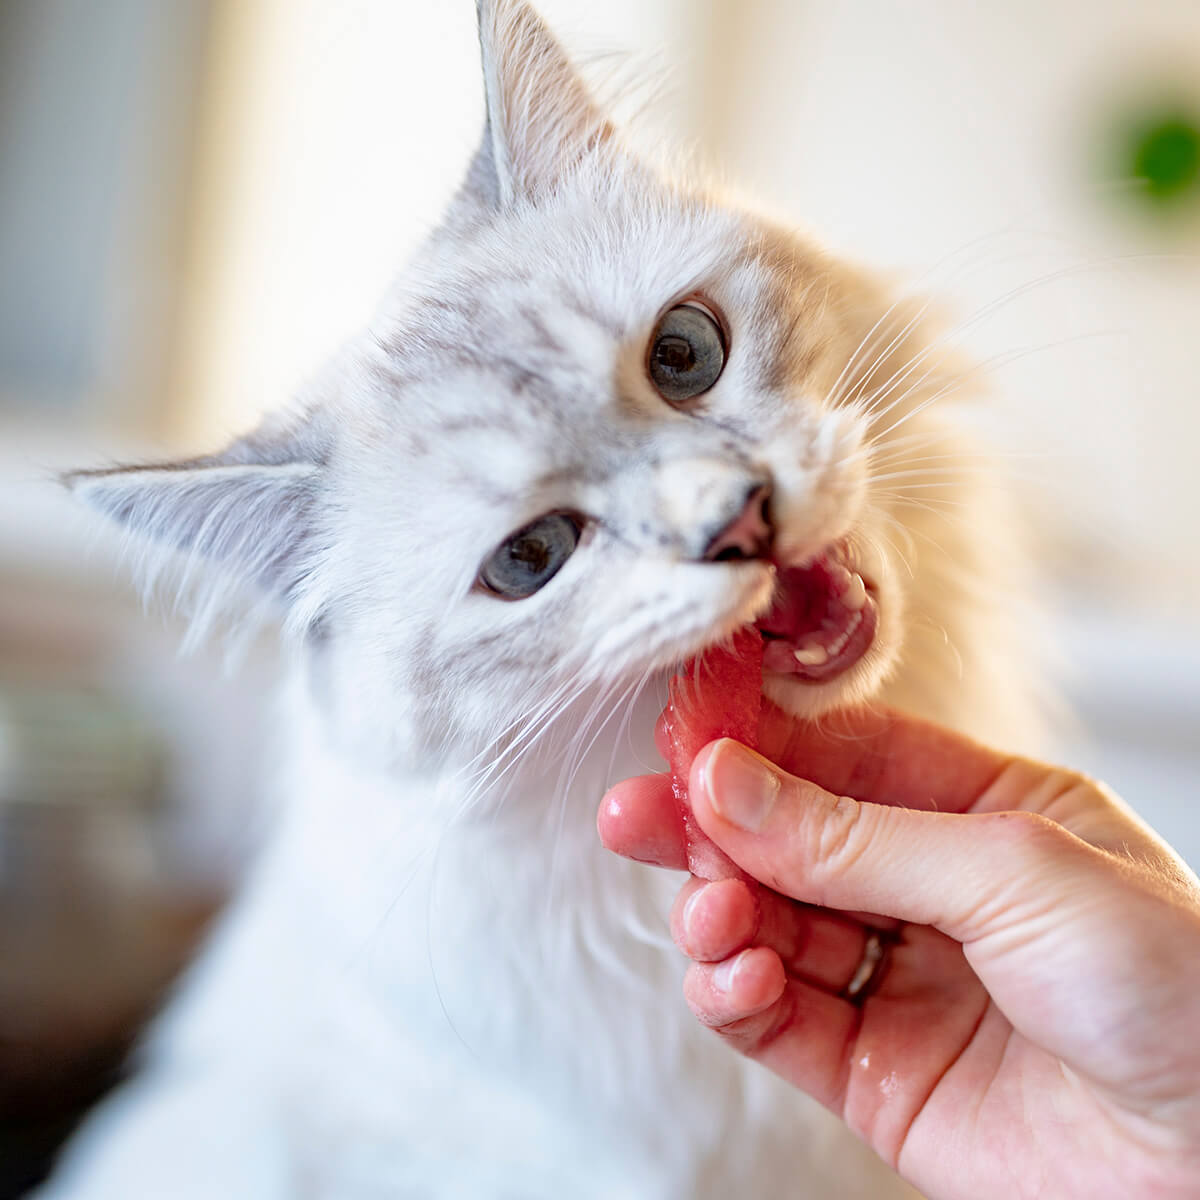 Натуральное питание для кошки - советы меню для кота на каждый день